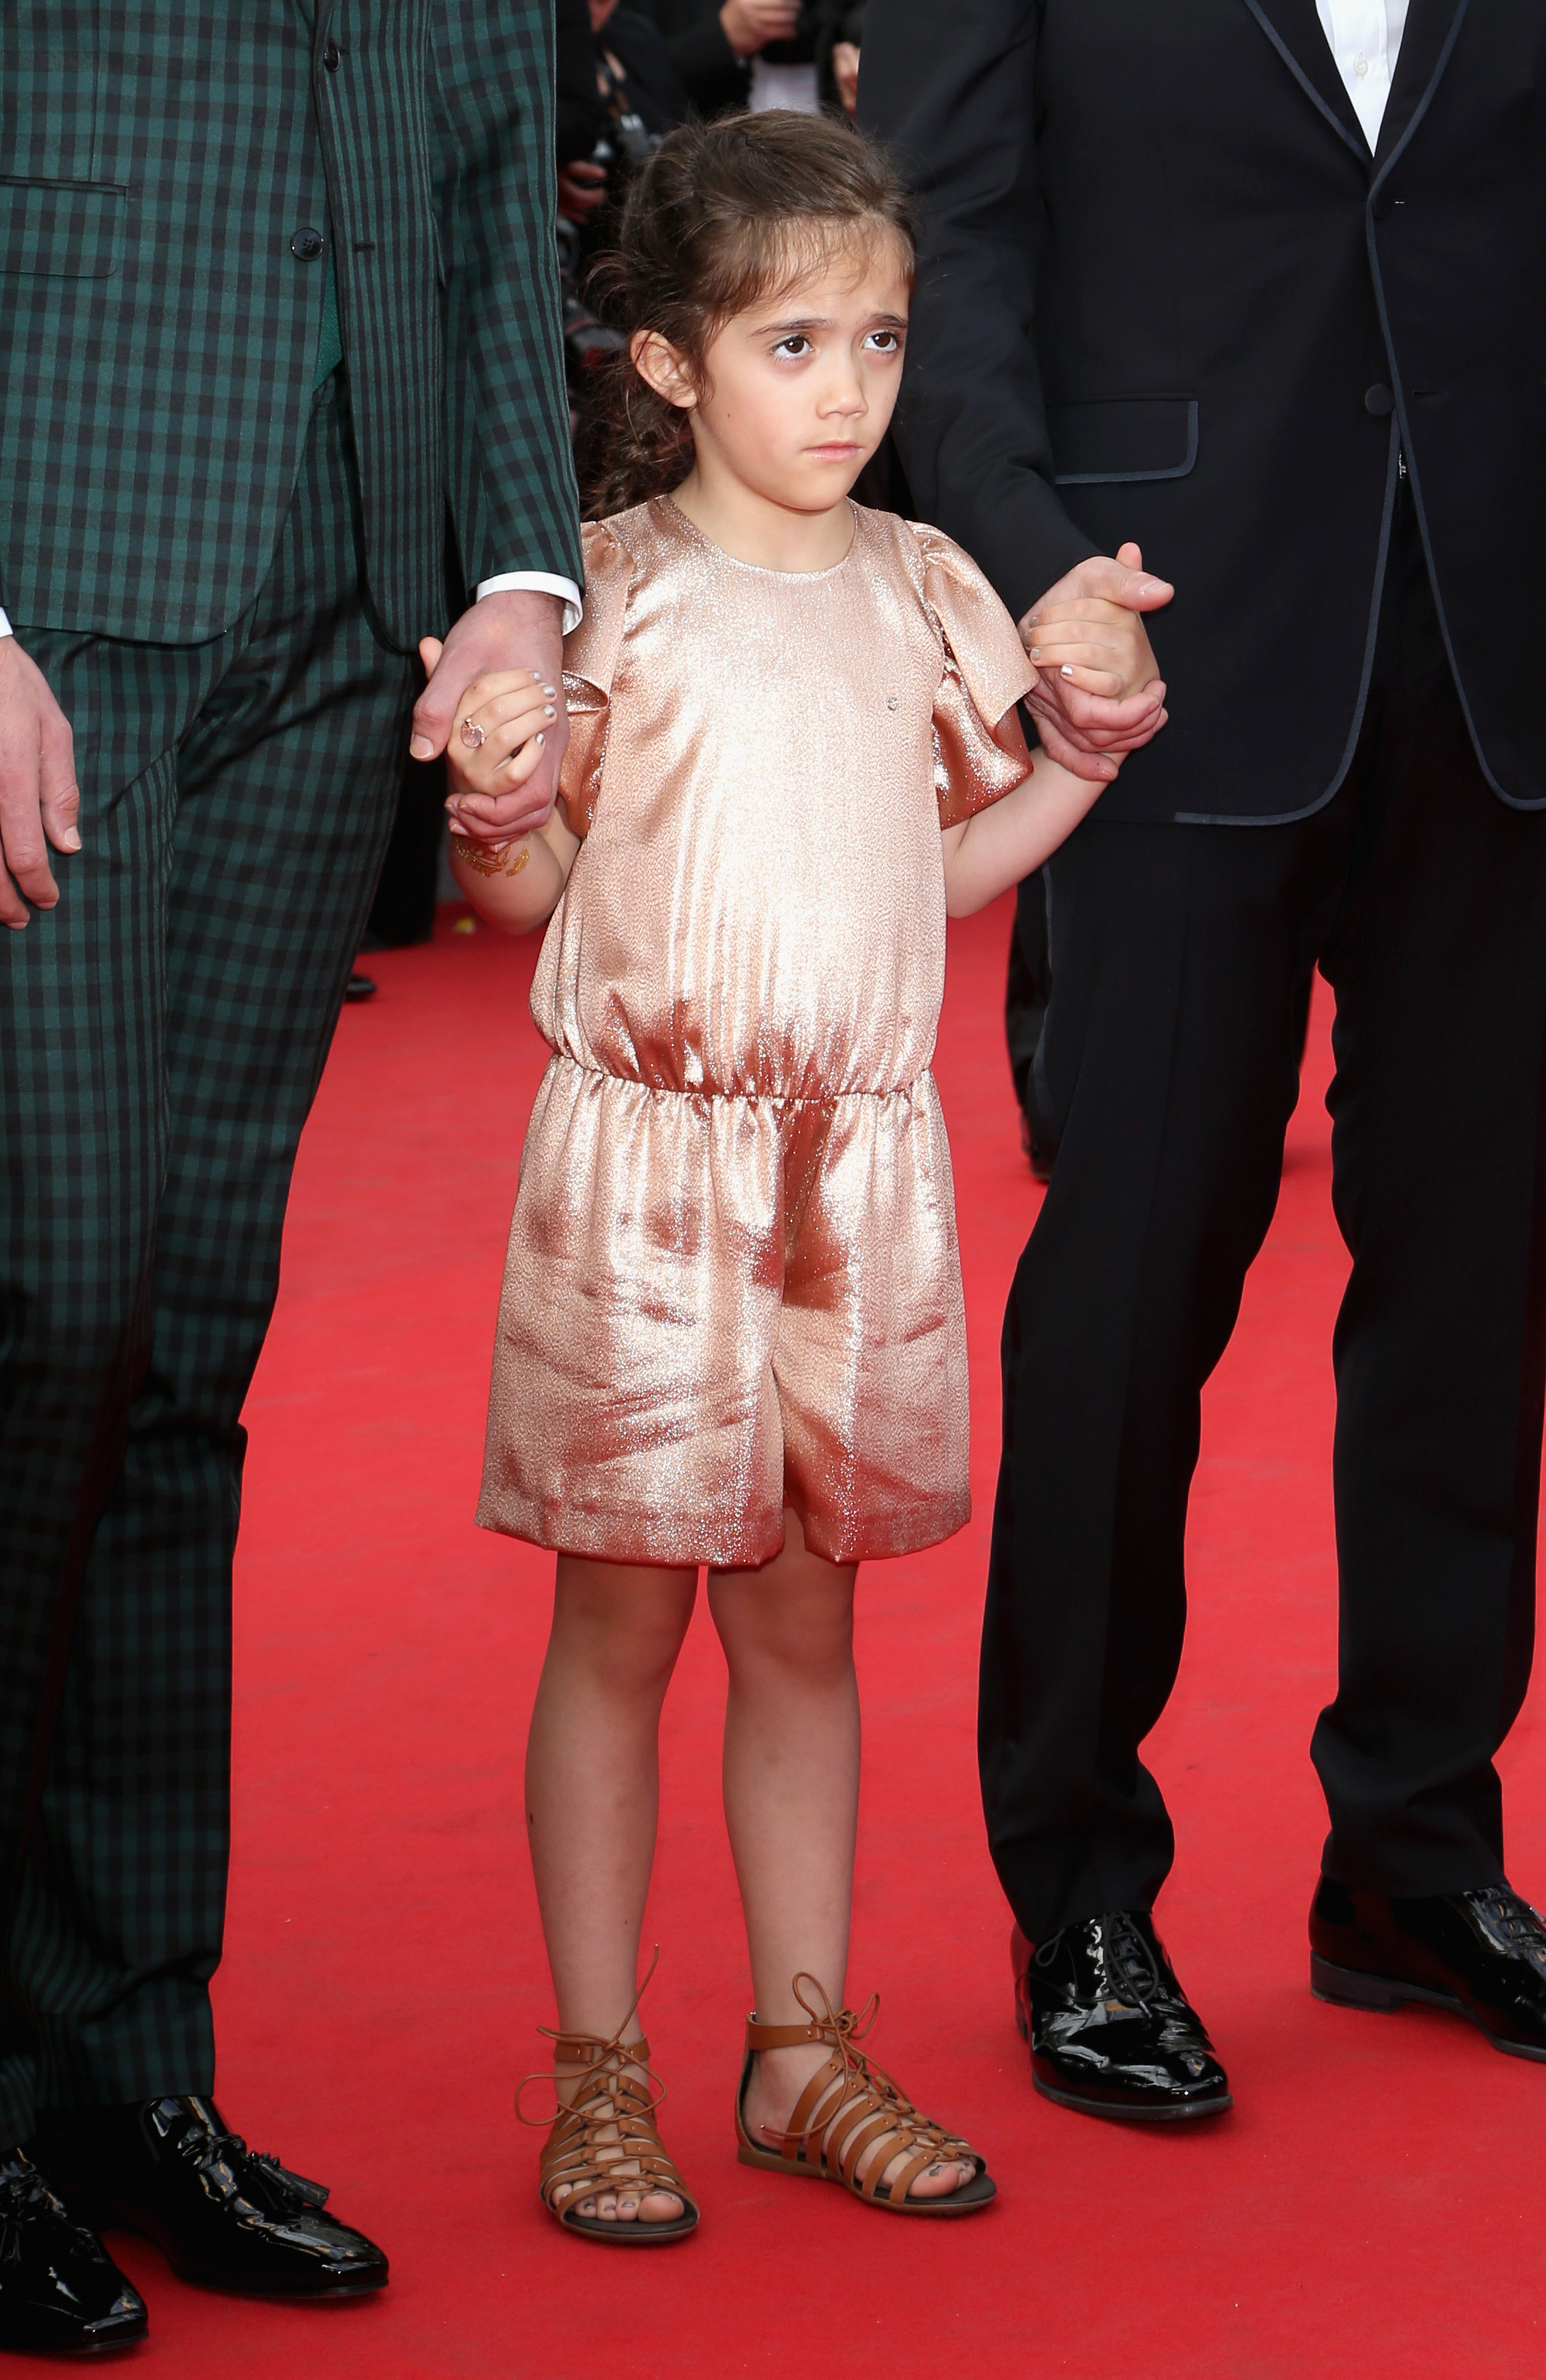 Fue fotografiada asistiendo al estreno de "The Prophet" el 17 de mayo de 2014 en Cannes, Francia | Fuente: Getty Images